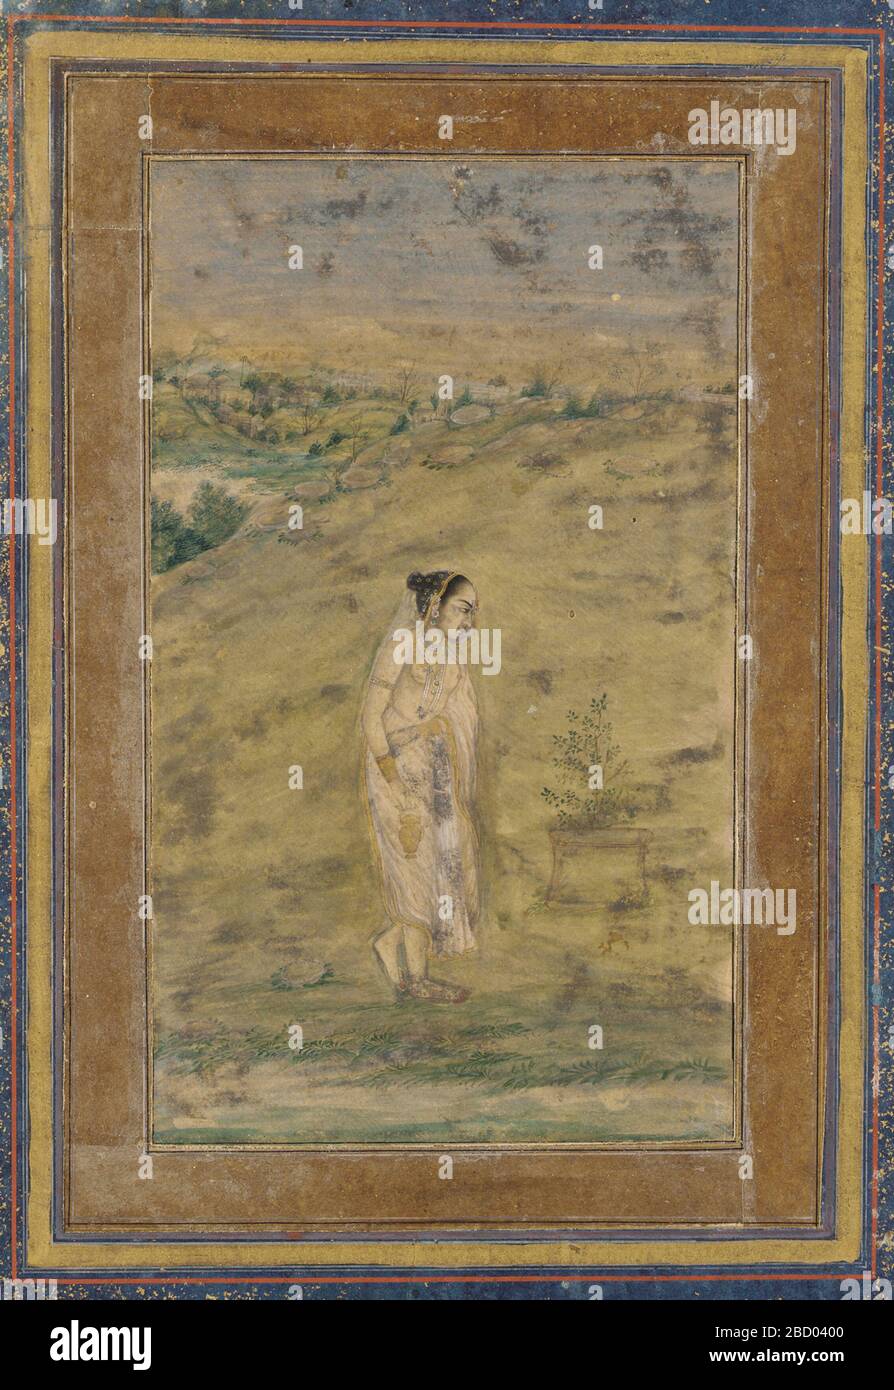 ; Inde ; début du XVIIe siècle ; couleur, or et argent sur papier ; H x l : 17,3 x 10,3 cm (6 13/16 x 4 1/16 po) ; Don de Charles Lang freer une fille au bord de l'eau Banque D'Images